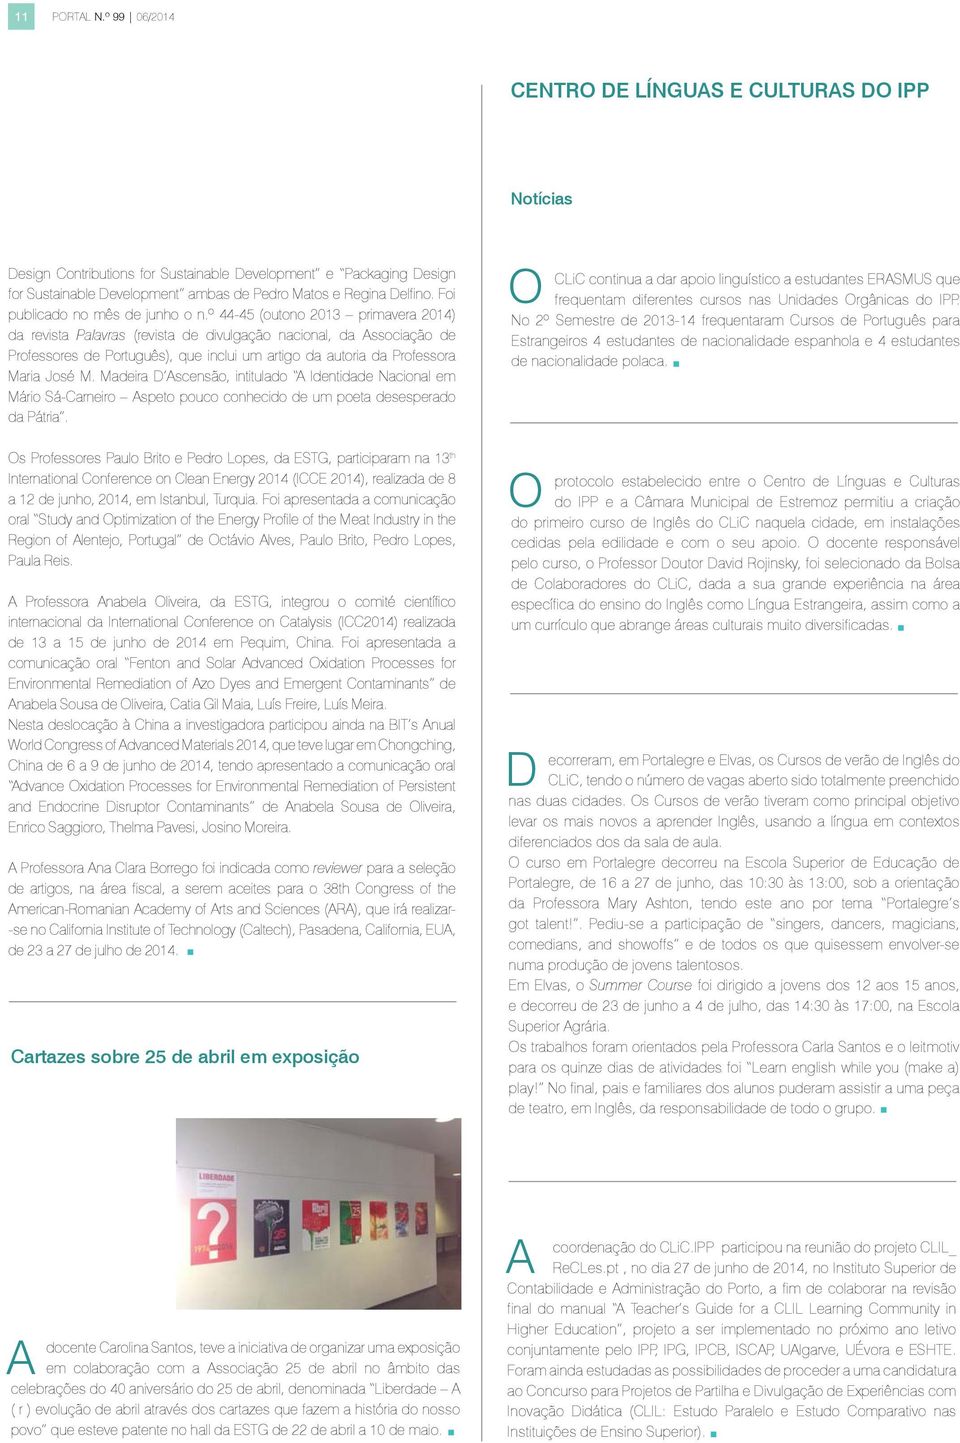 º 44-45 (outono 2013 primavera 2014) da revista Palavras (revista de divulgação nacional, da ssociação de Professores de Português), que inclui um artigo da autoria da Professora Maria José M.